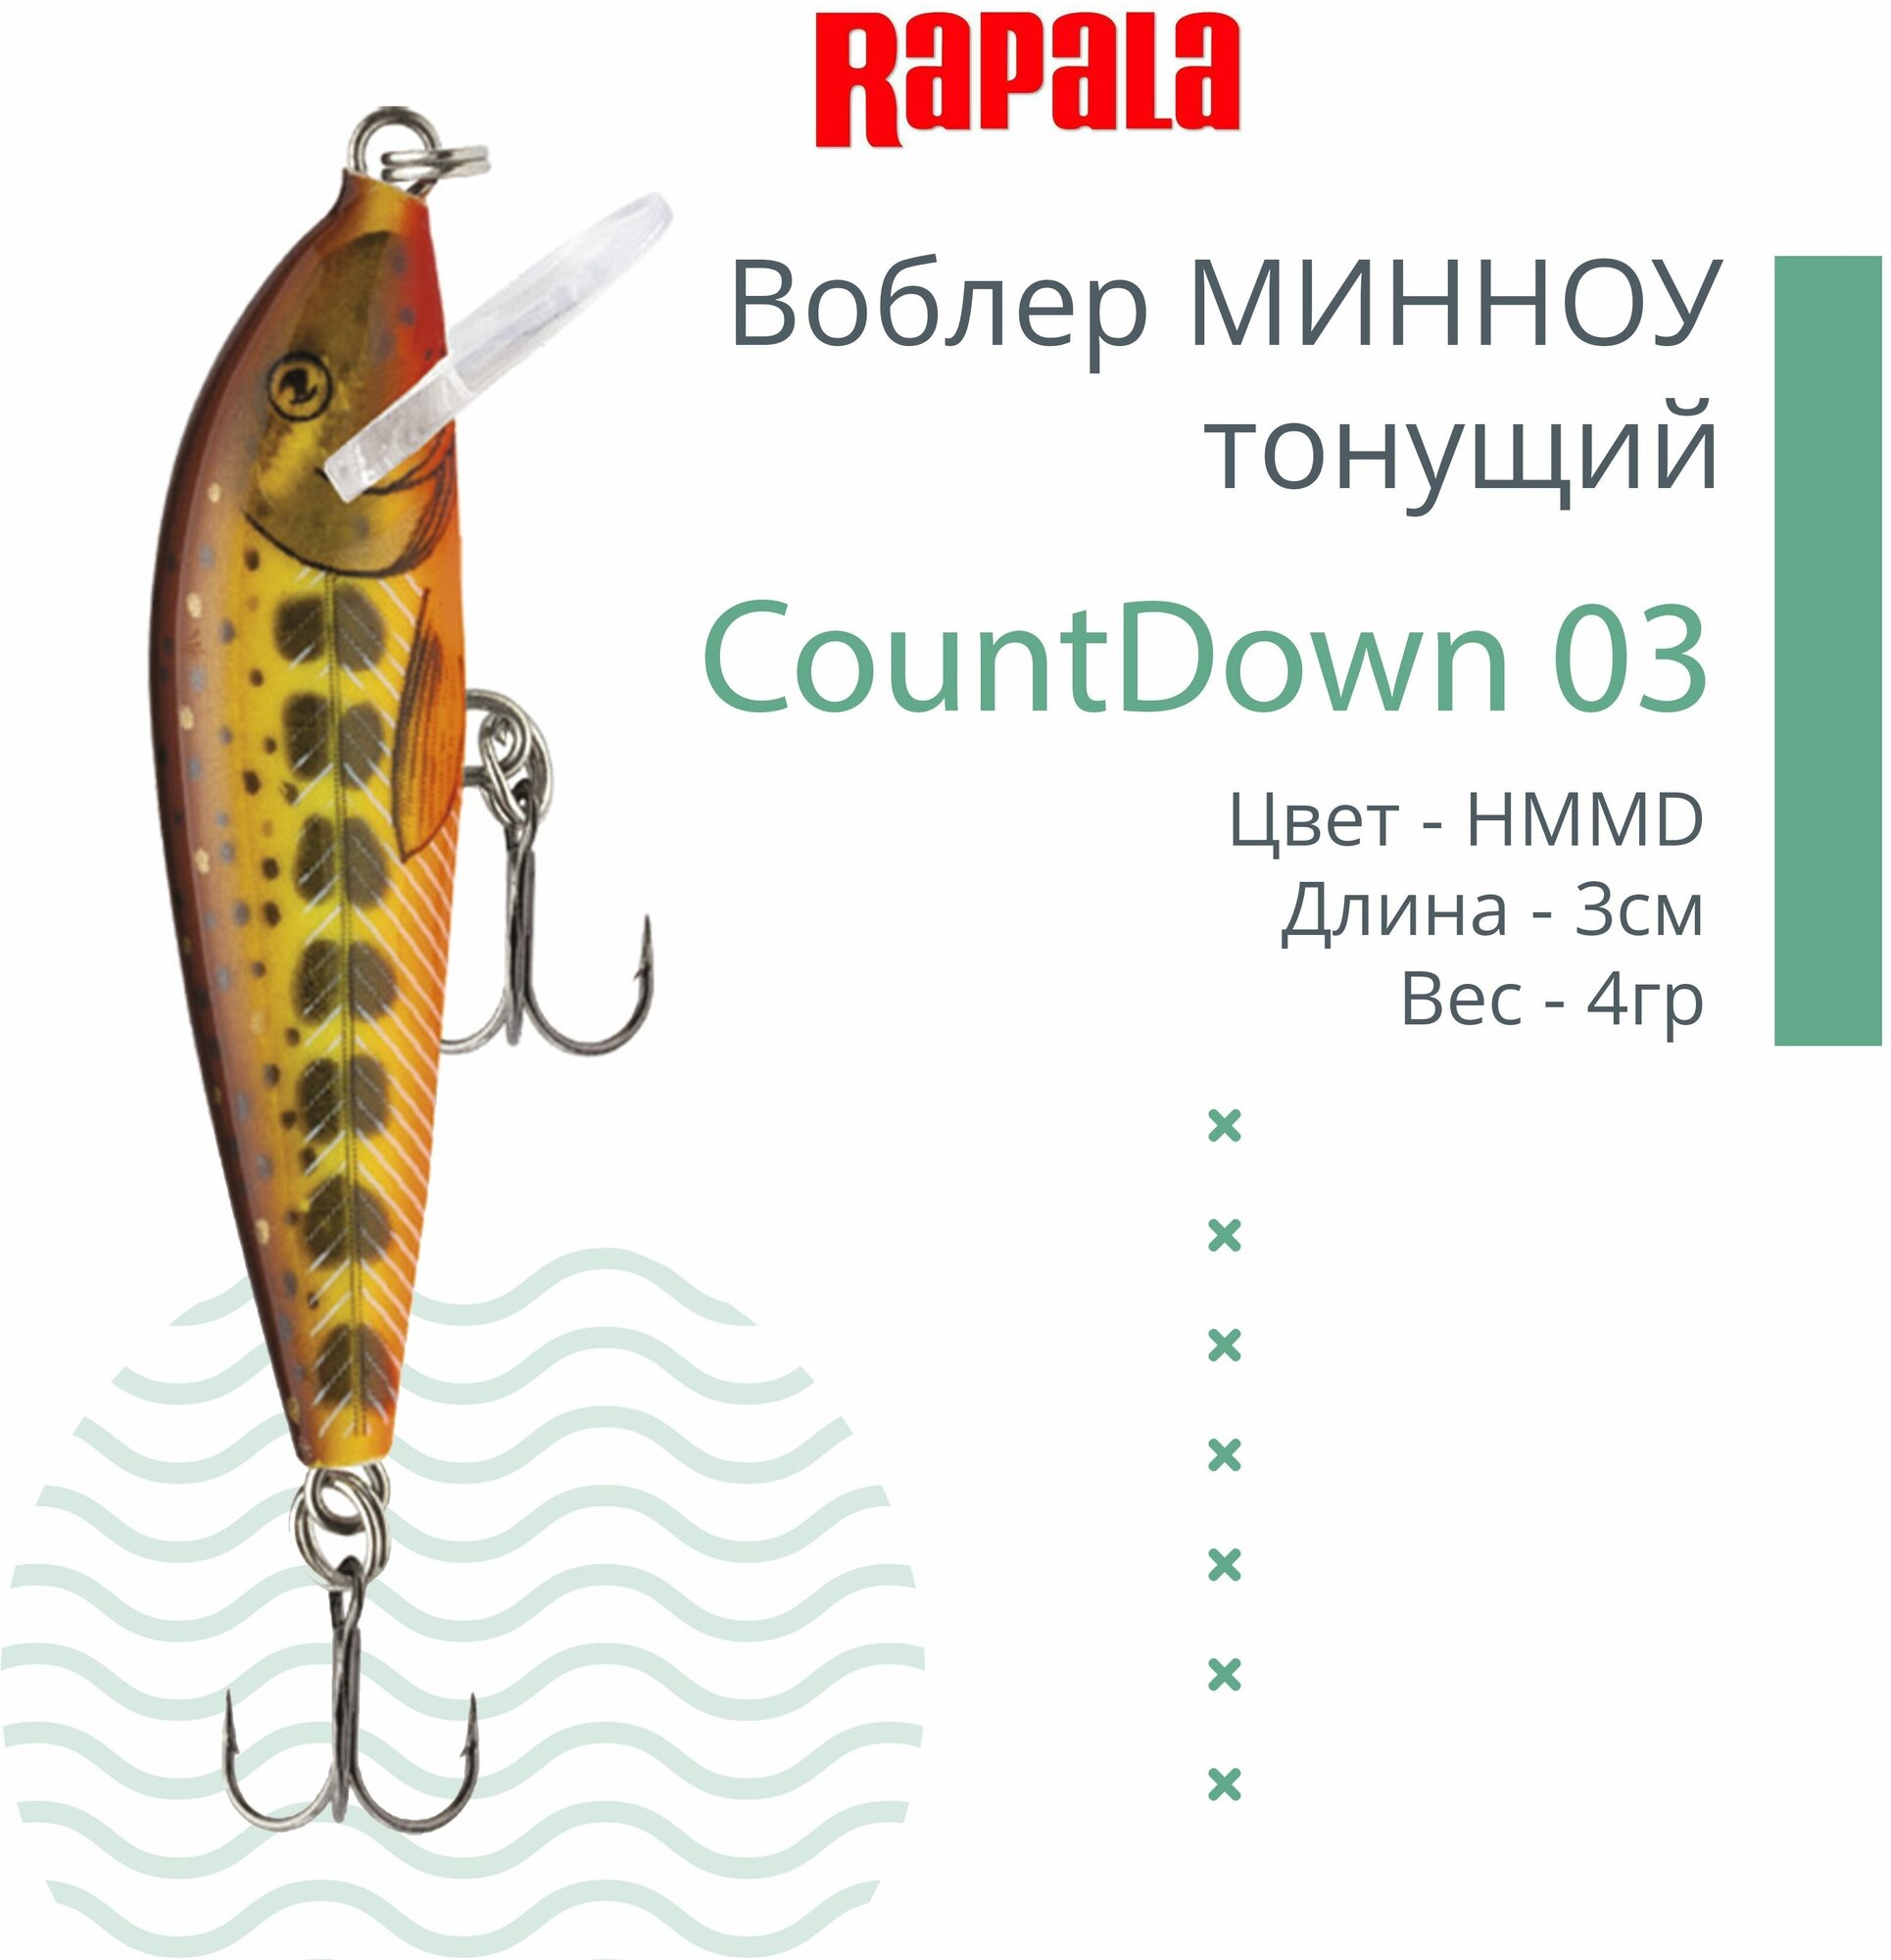 Воблер для рыбалки RAPALA CountDown 03 , 3см, 4г, цвет HMMD, тонущий